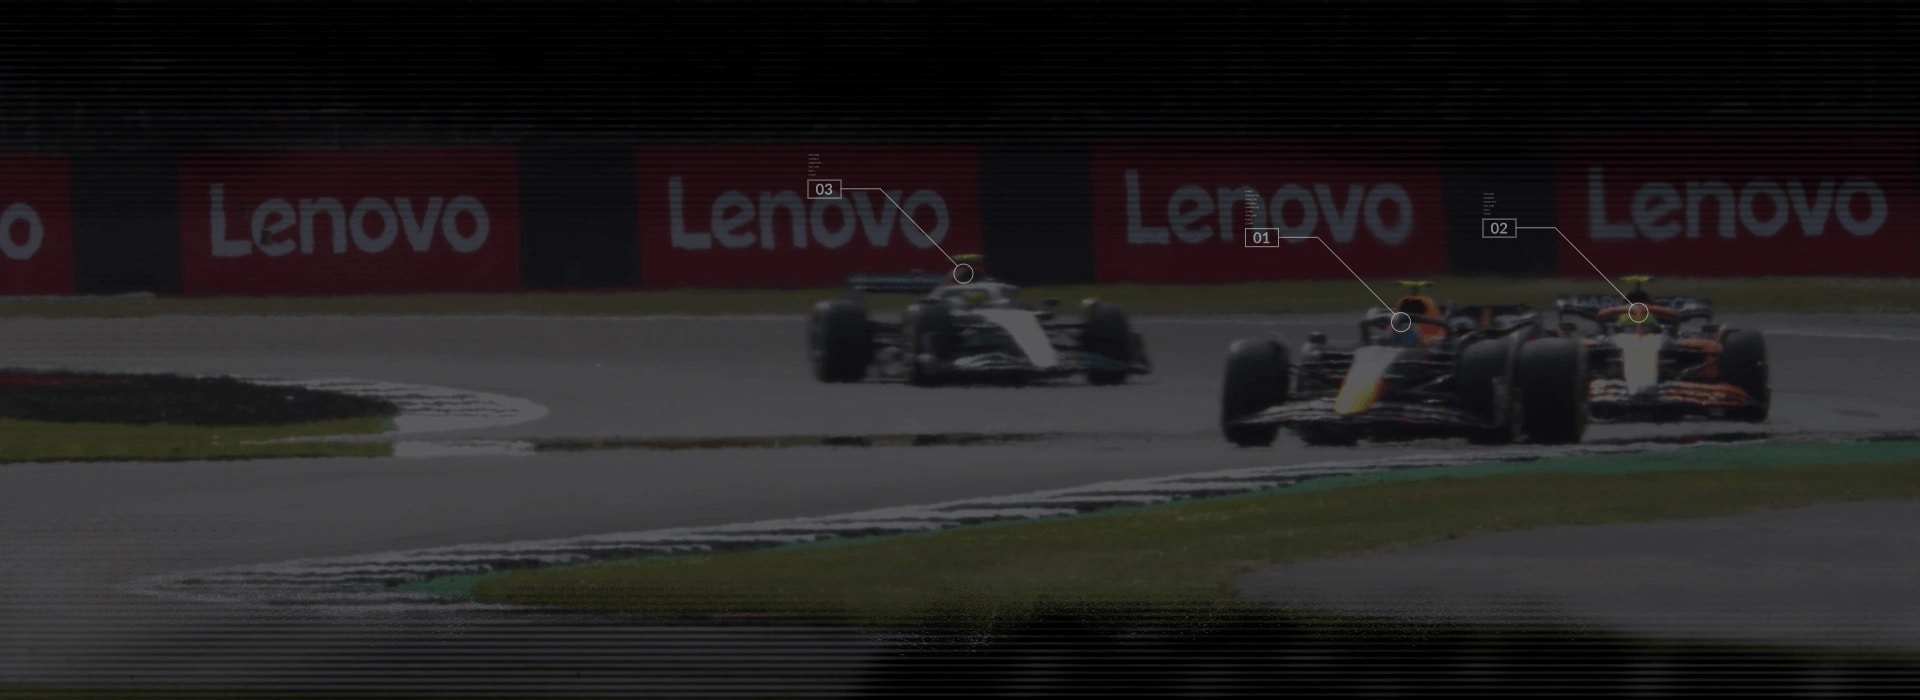 3 vozidlá F1 na závodnej dráhe s bannermi Lenovo v pozadí